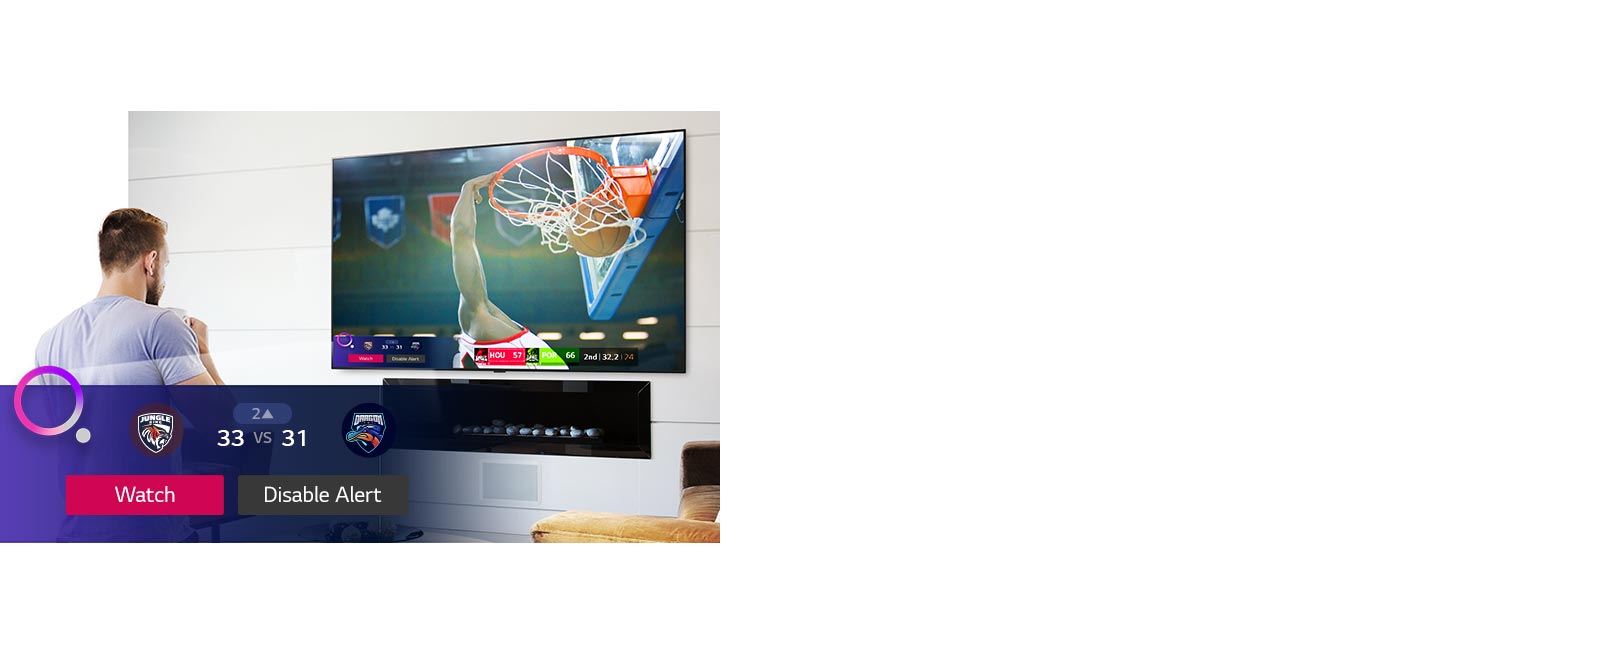 Écran de télévision montrant une scène d'un match de basket-ball avec une alerte sportive